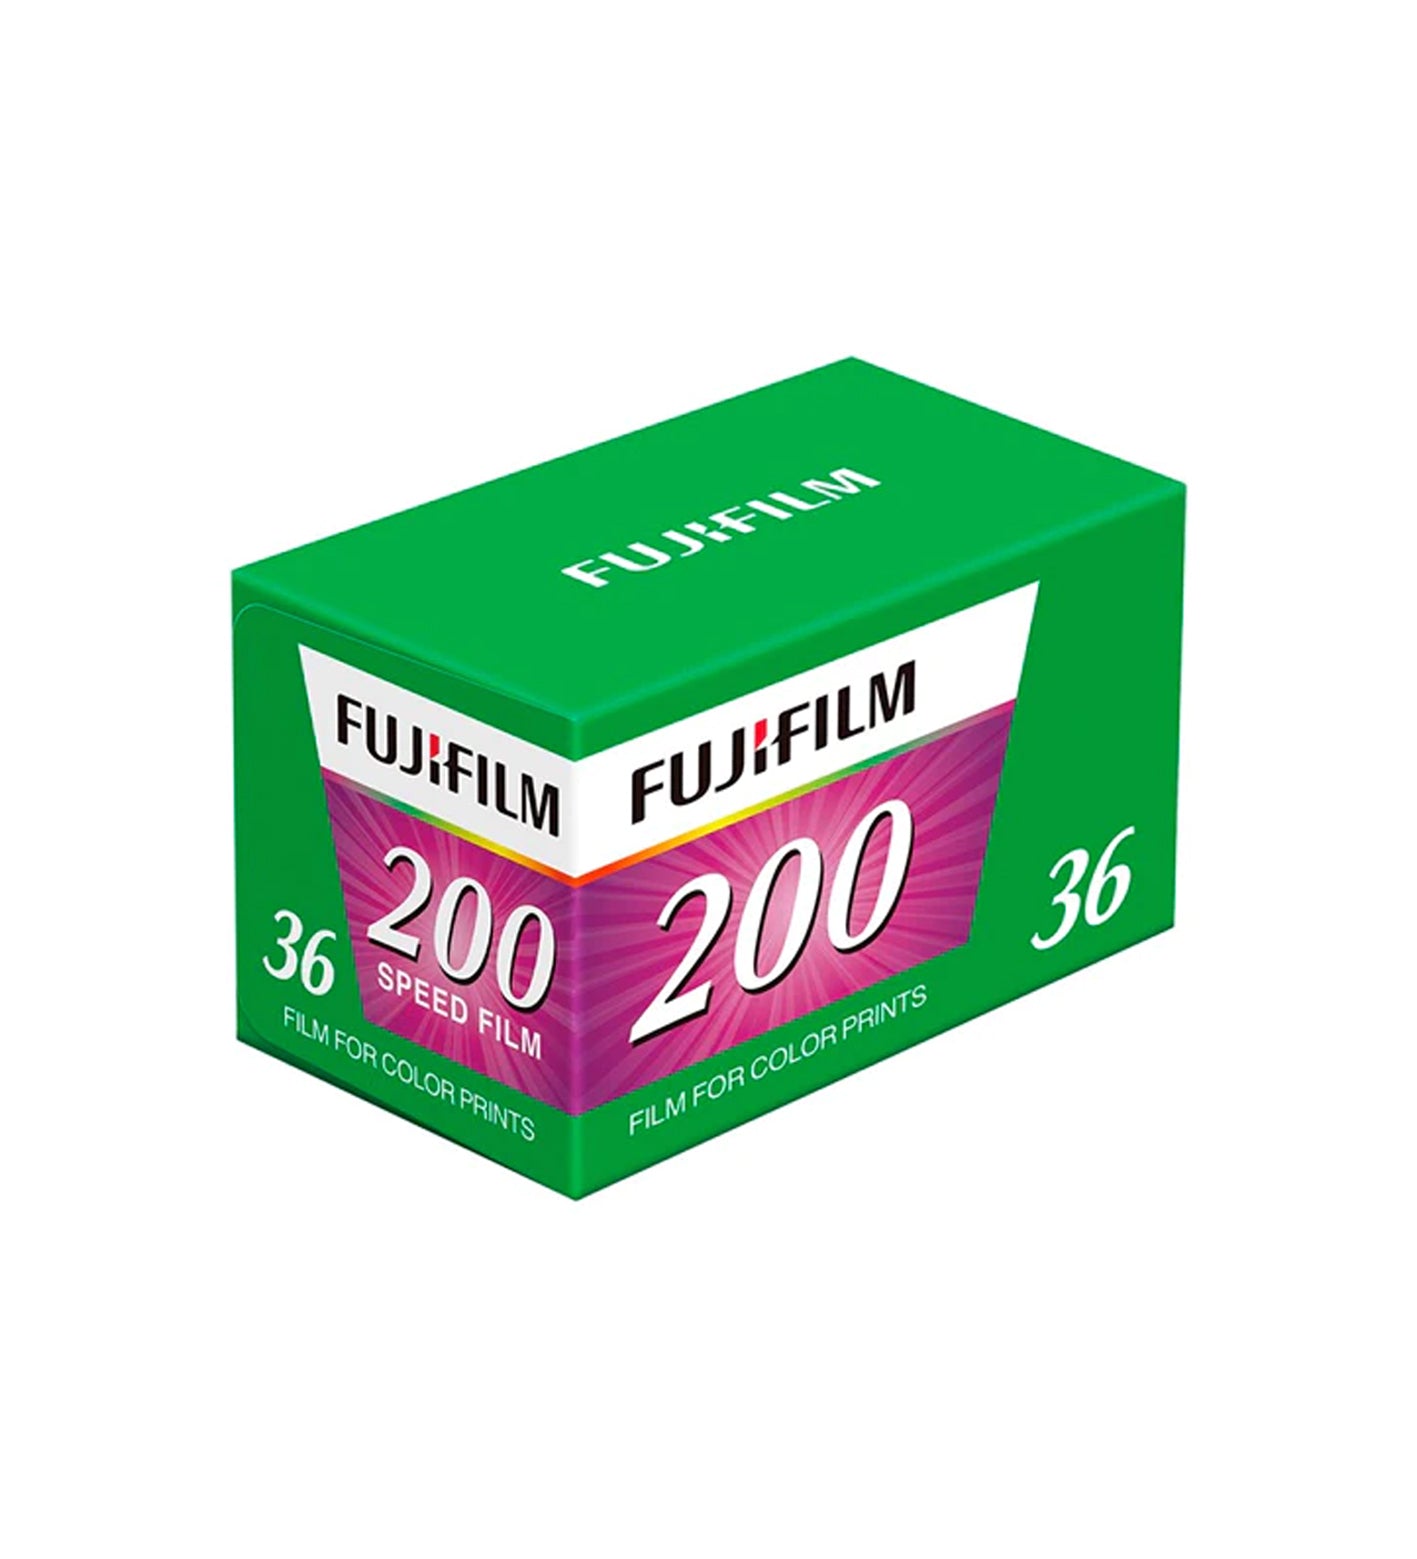 Fujifilm 200 35mm Film 36 Exposures (£9.99 incl VAT) – TPG Bookshop